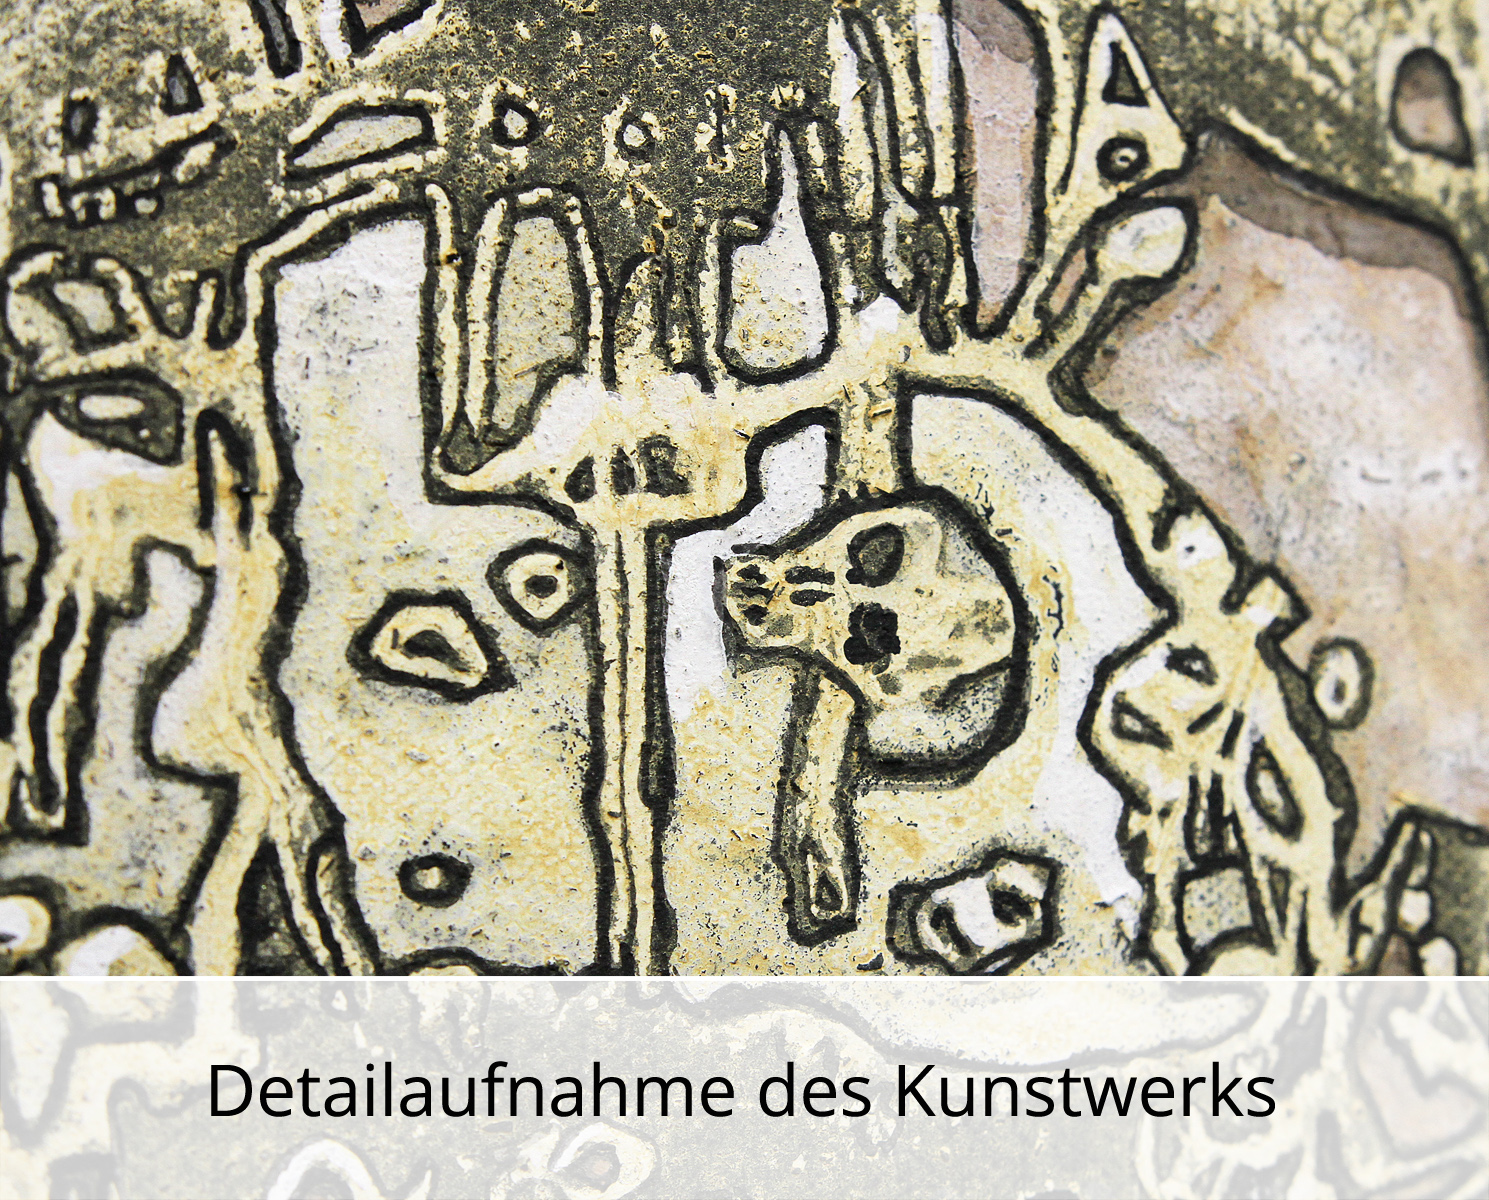 C. Blechschmidt: Die Ausgrabung, Original/Unikat, zeitgenössisches Acrylgemälde